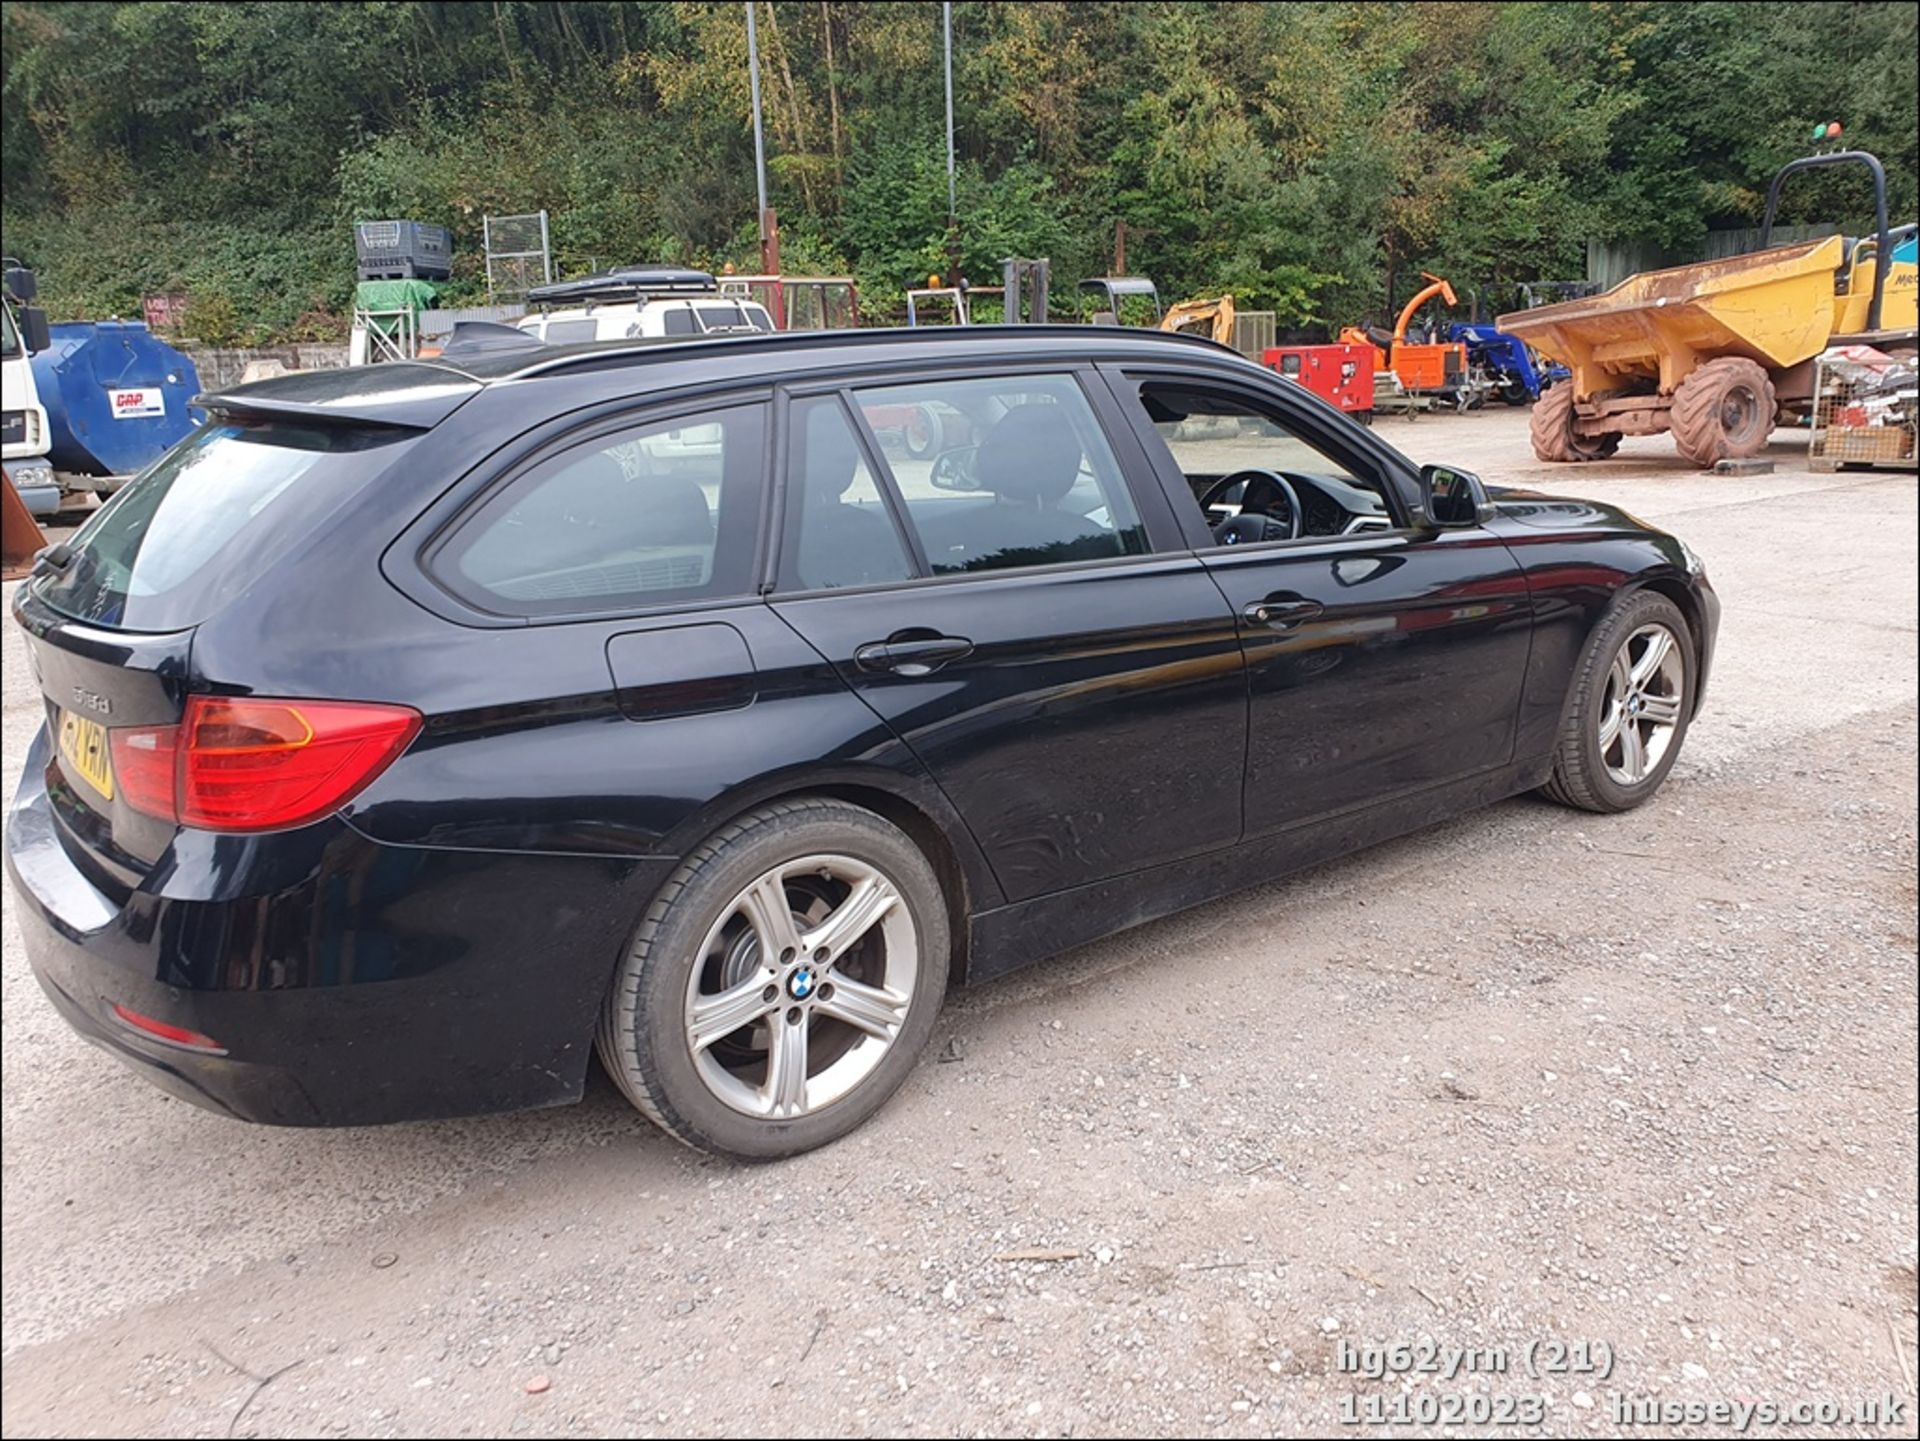 13/62 BMW 318D SE - 1995cc 5dr Estate (Black, 201k) - Image 22 of 58